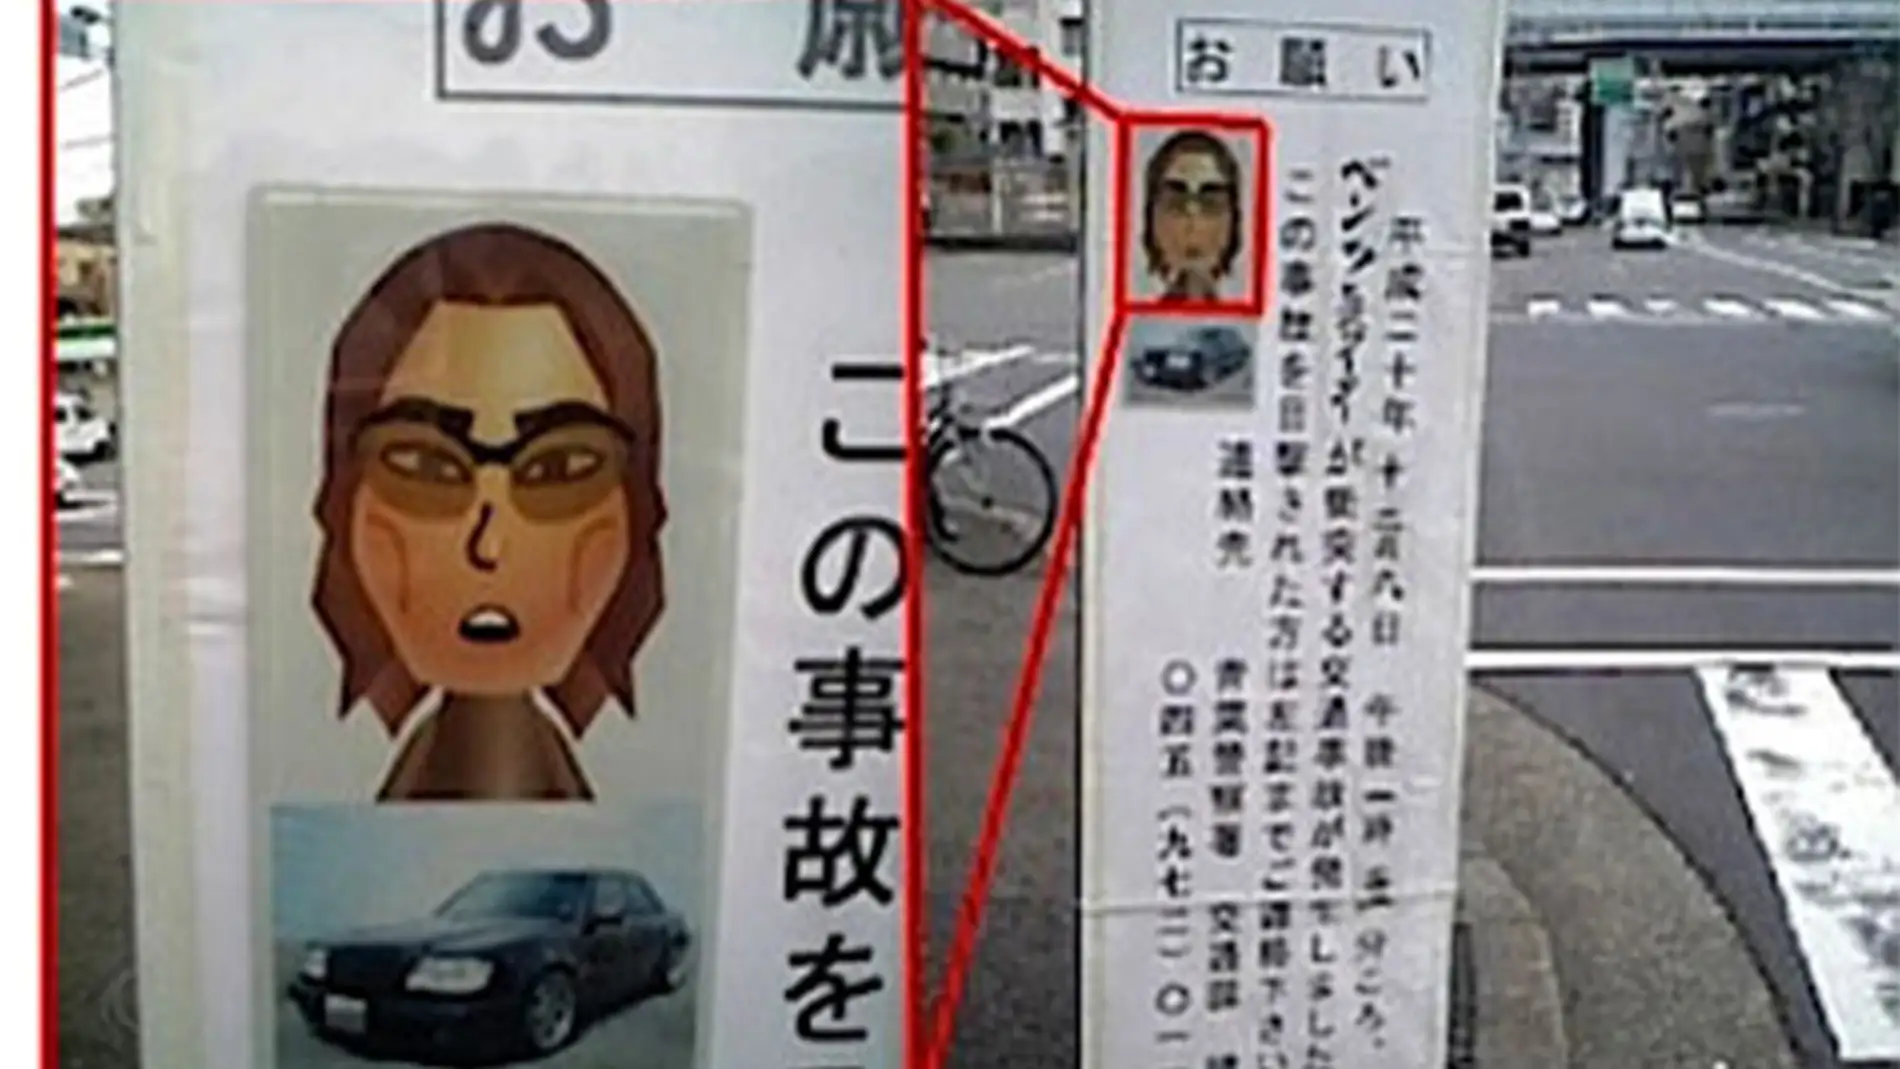 Mii utilizado por la policía en Japón